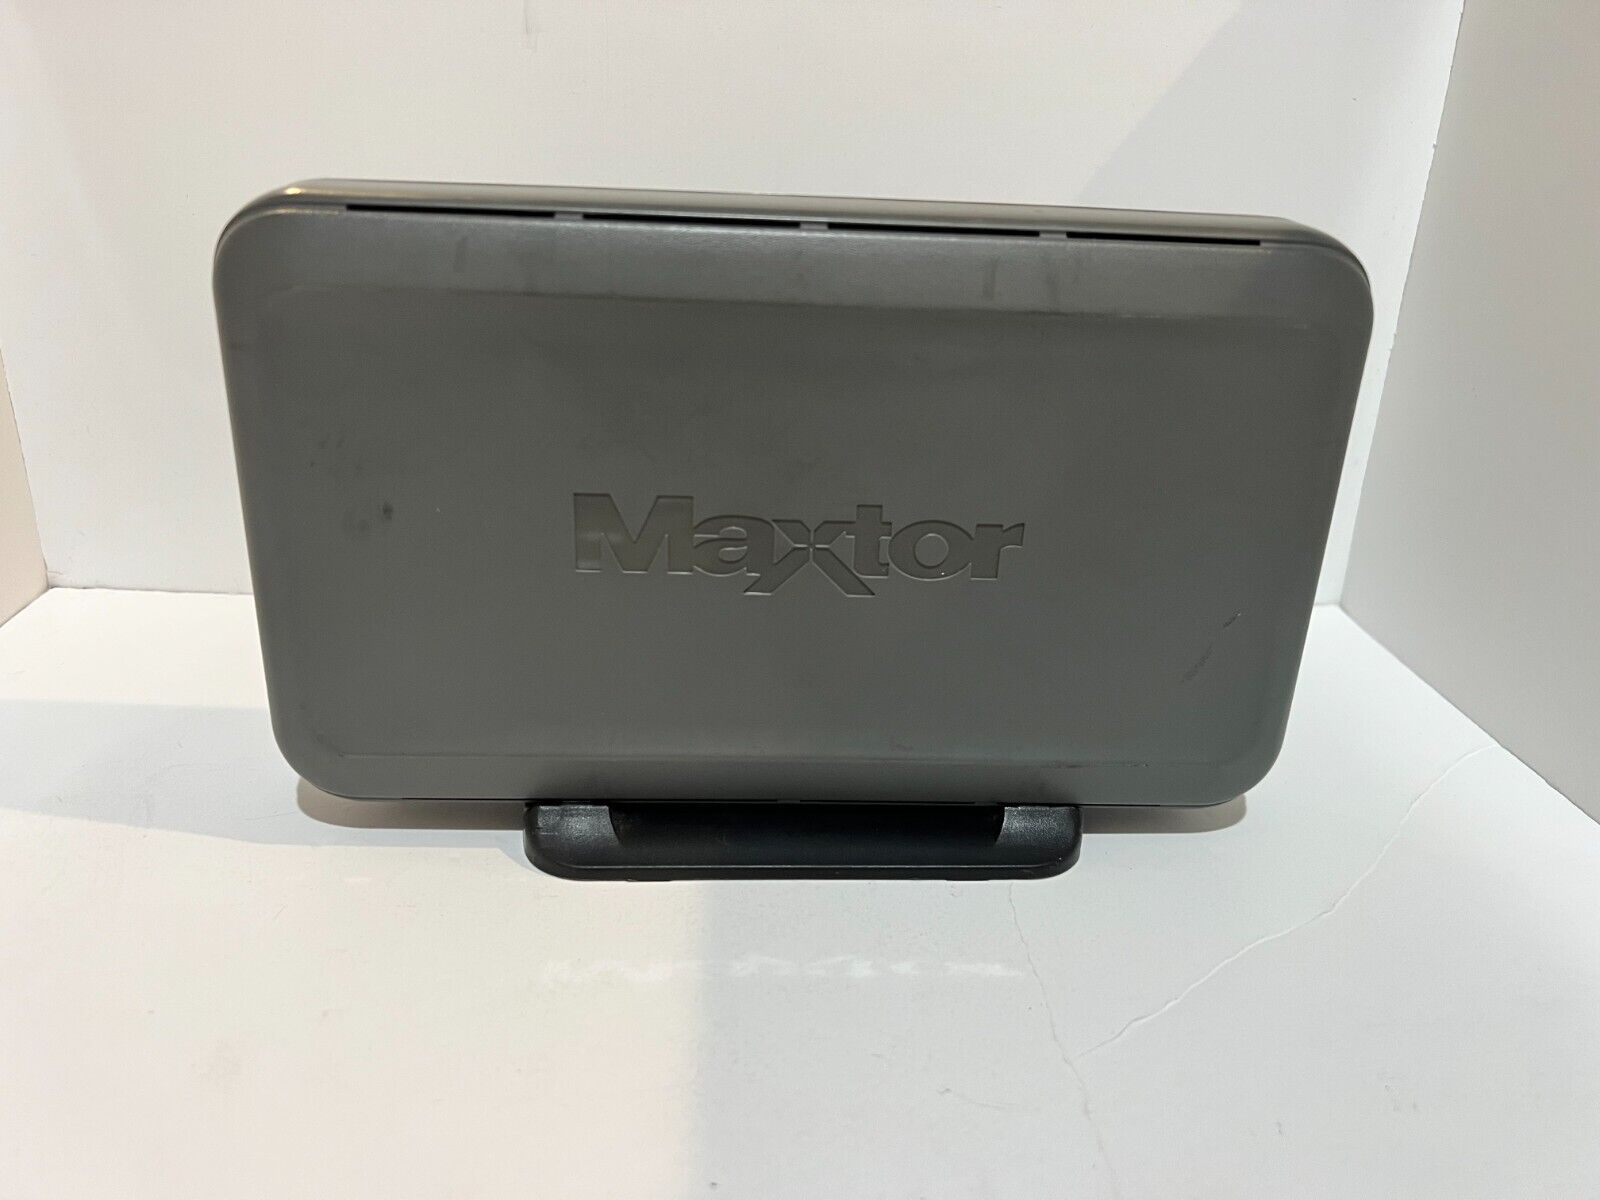 Maxtor Personal Storage 3200 External USB Hard Drive w Power & USB